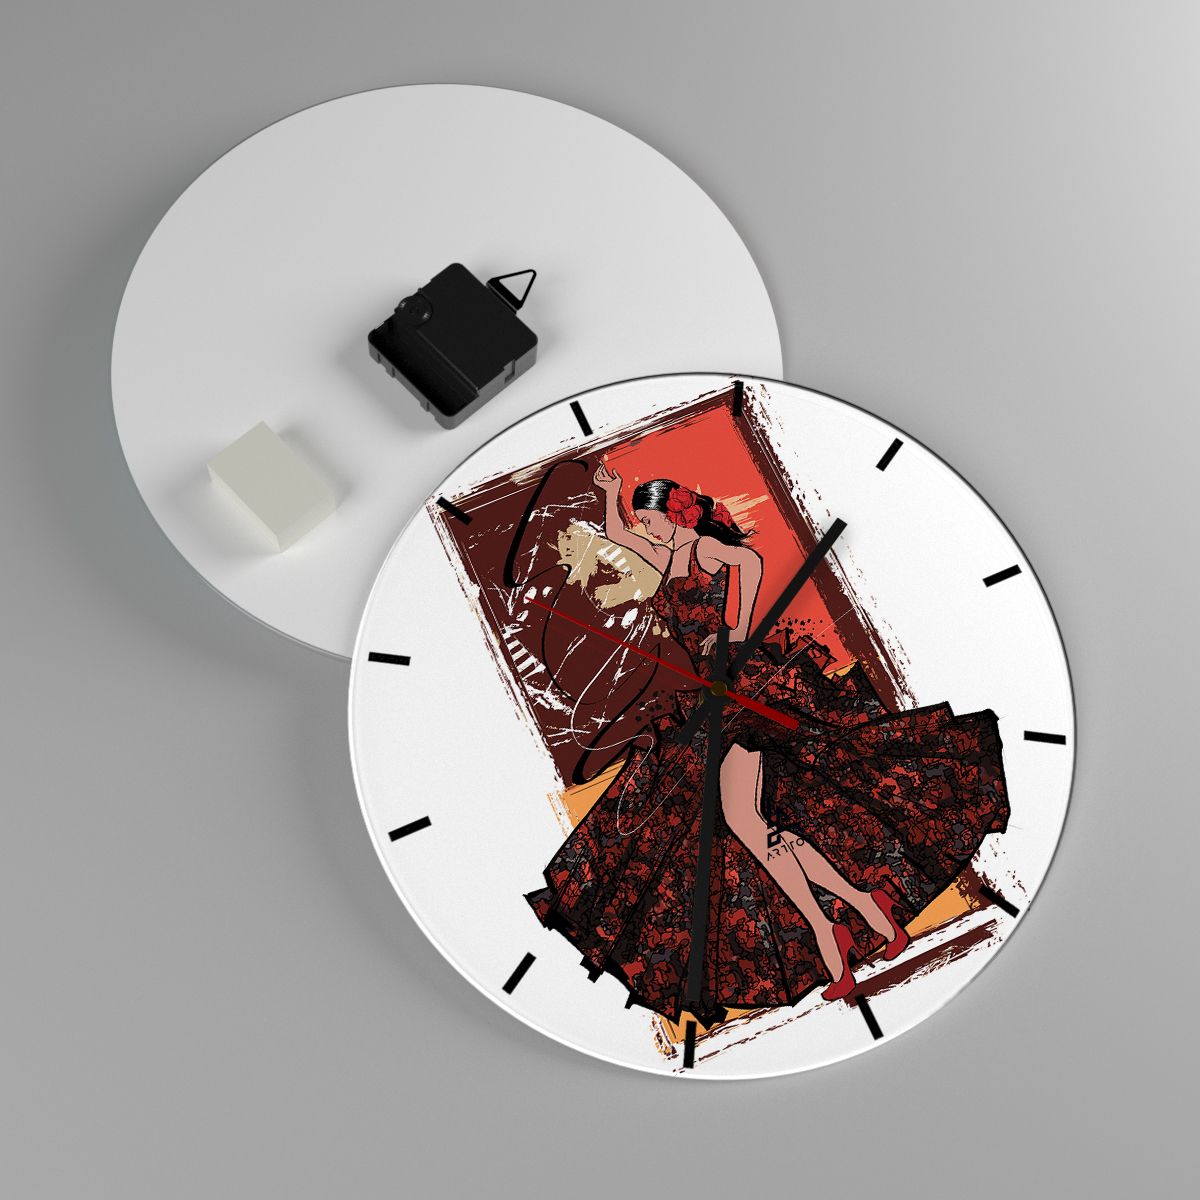 Horloge murale Danseur, Horloge murale Flamenco, Horloge murale Danse, Horloge murale Art, Horloge murale Mode